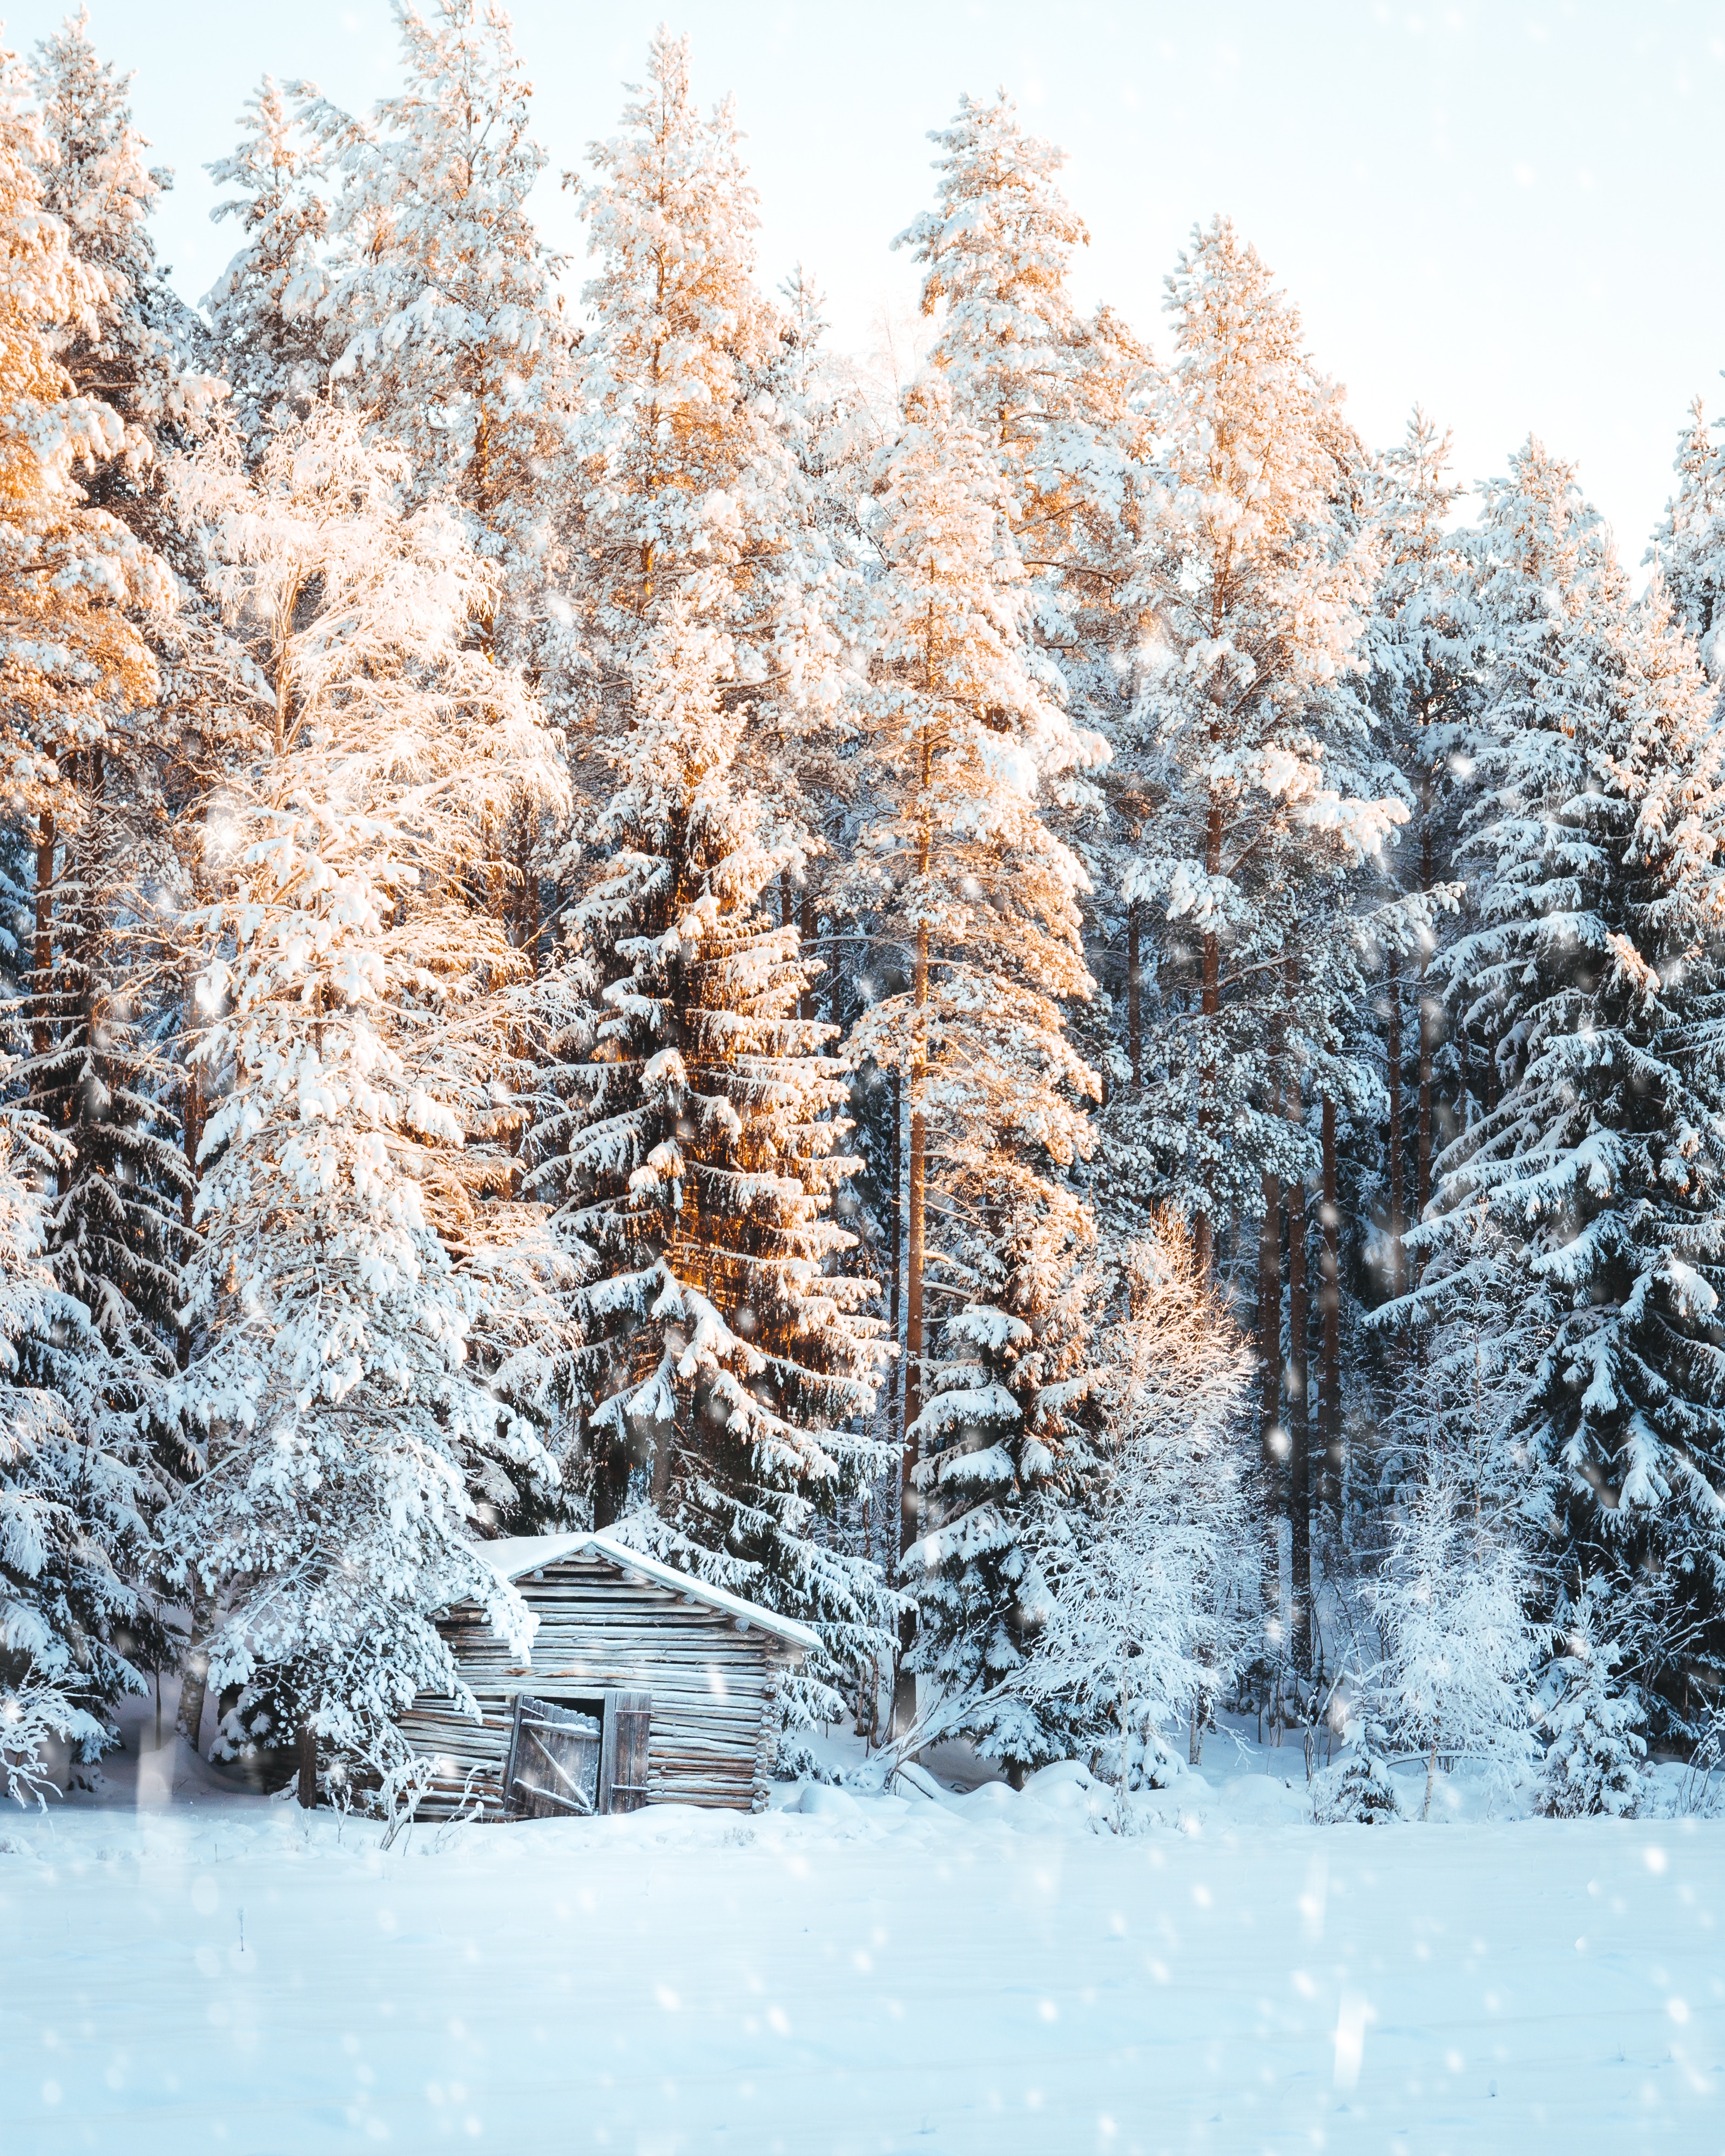 Скачать обои бесплатно Деревья, Снегопад, Природа, Снег, Свет, Зима, Домик картинка на рабочий стол ПК